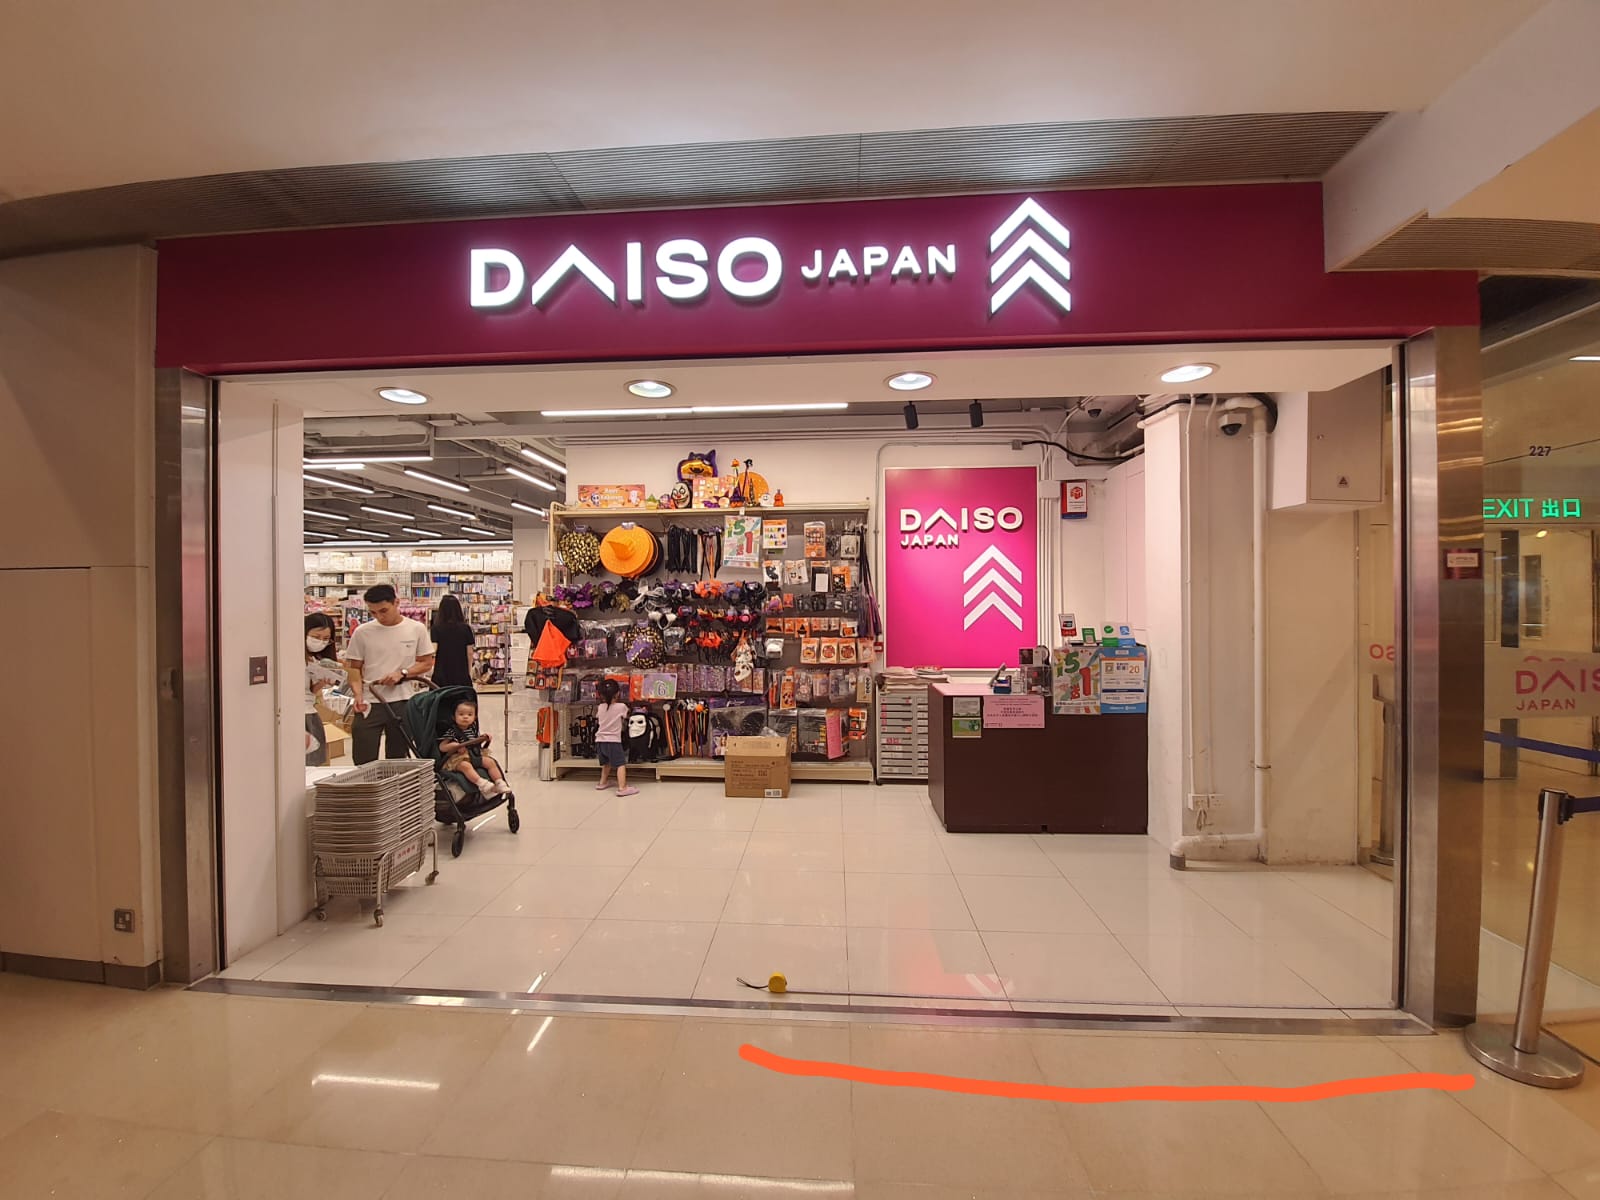 Daiso Japan 长发店